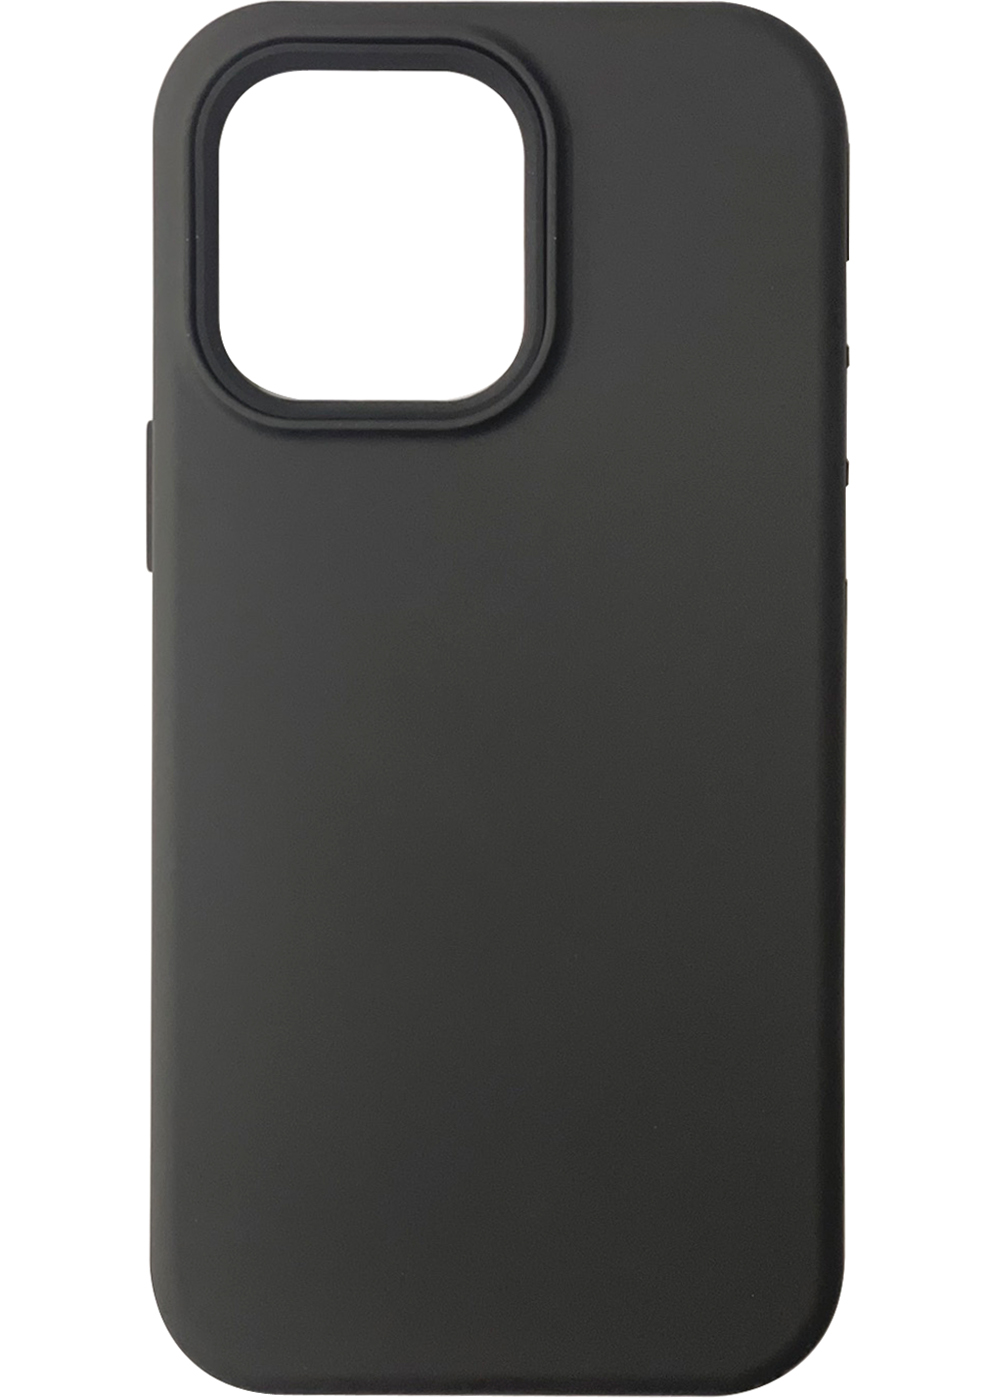 iP14ProMax 3in1 Case Black